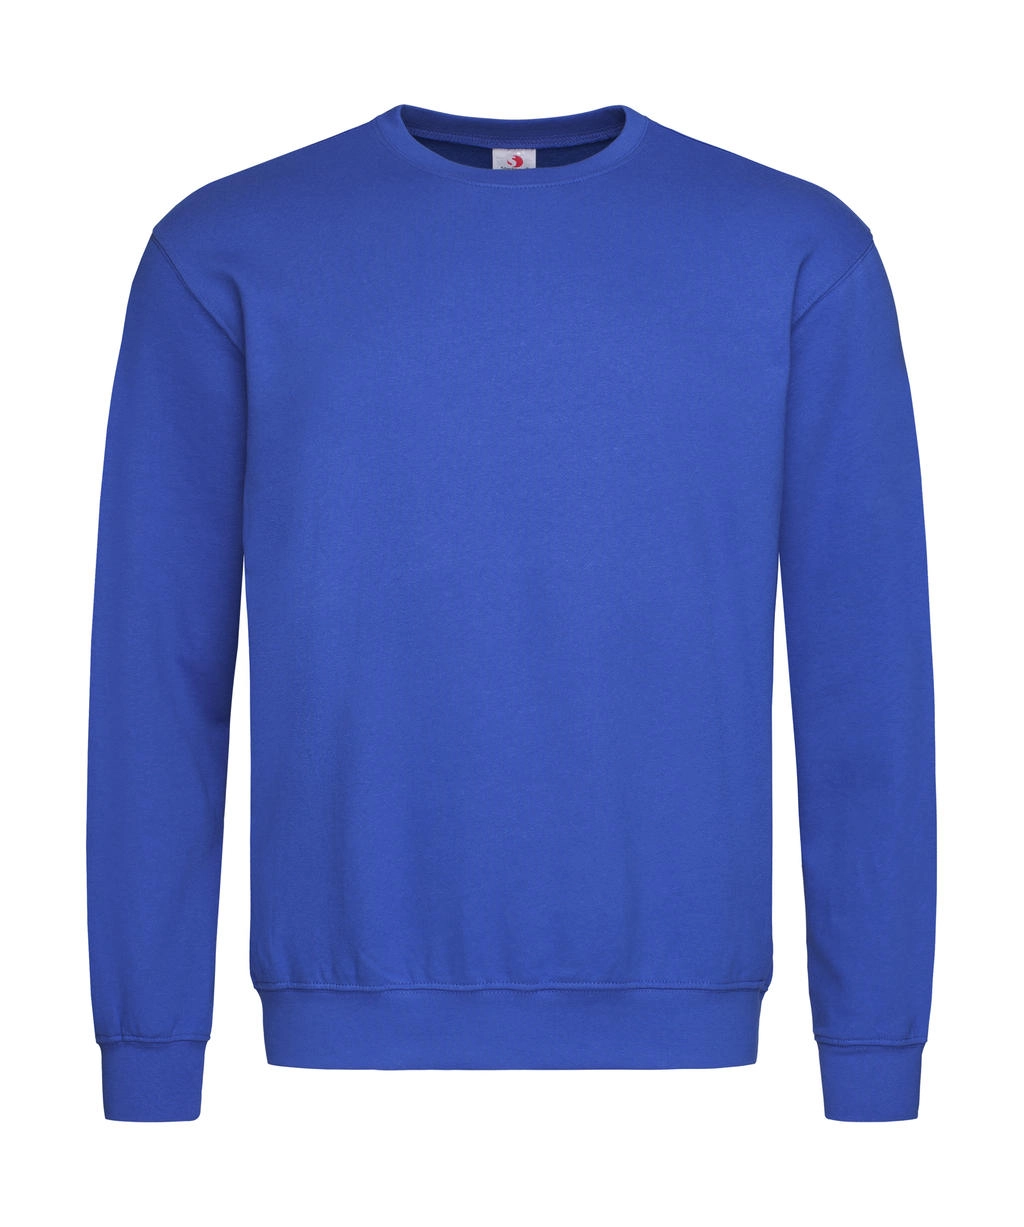 Unisex Sweatshirt Classic zum Besticken und Bedrucken in der Farbe Bright Royal mit Ihren Logo, Schriftzug oder Motiv.